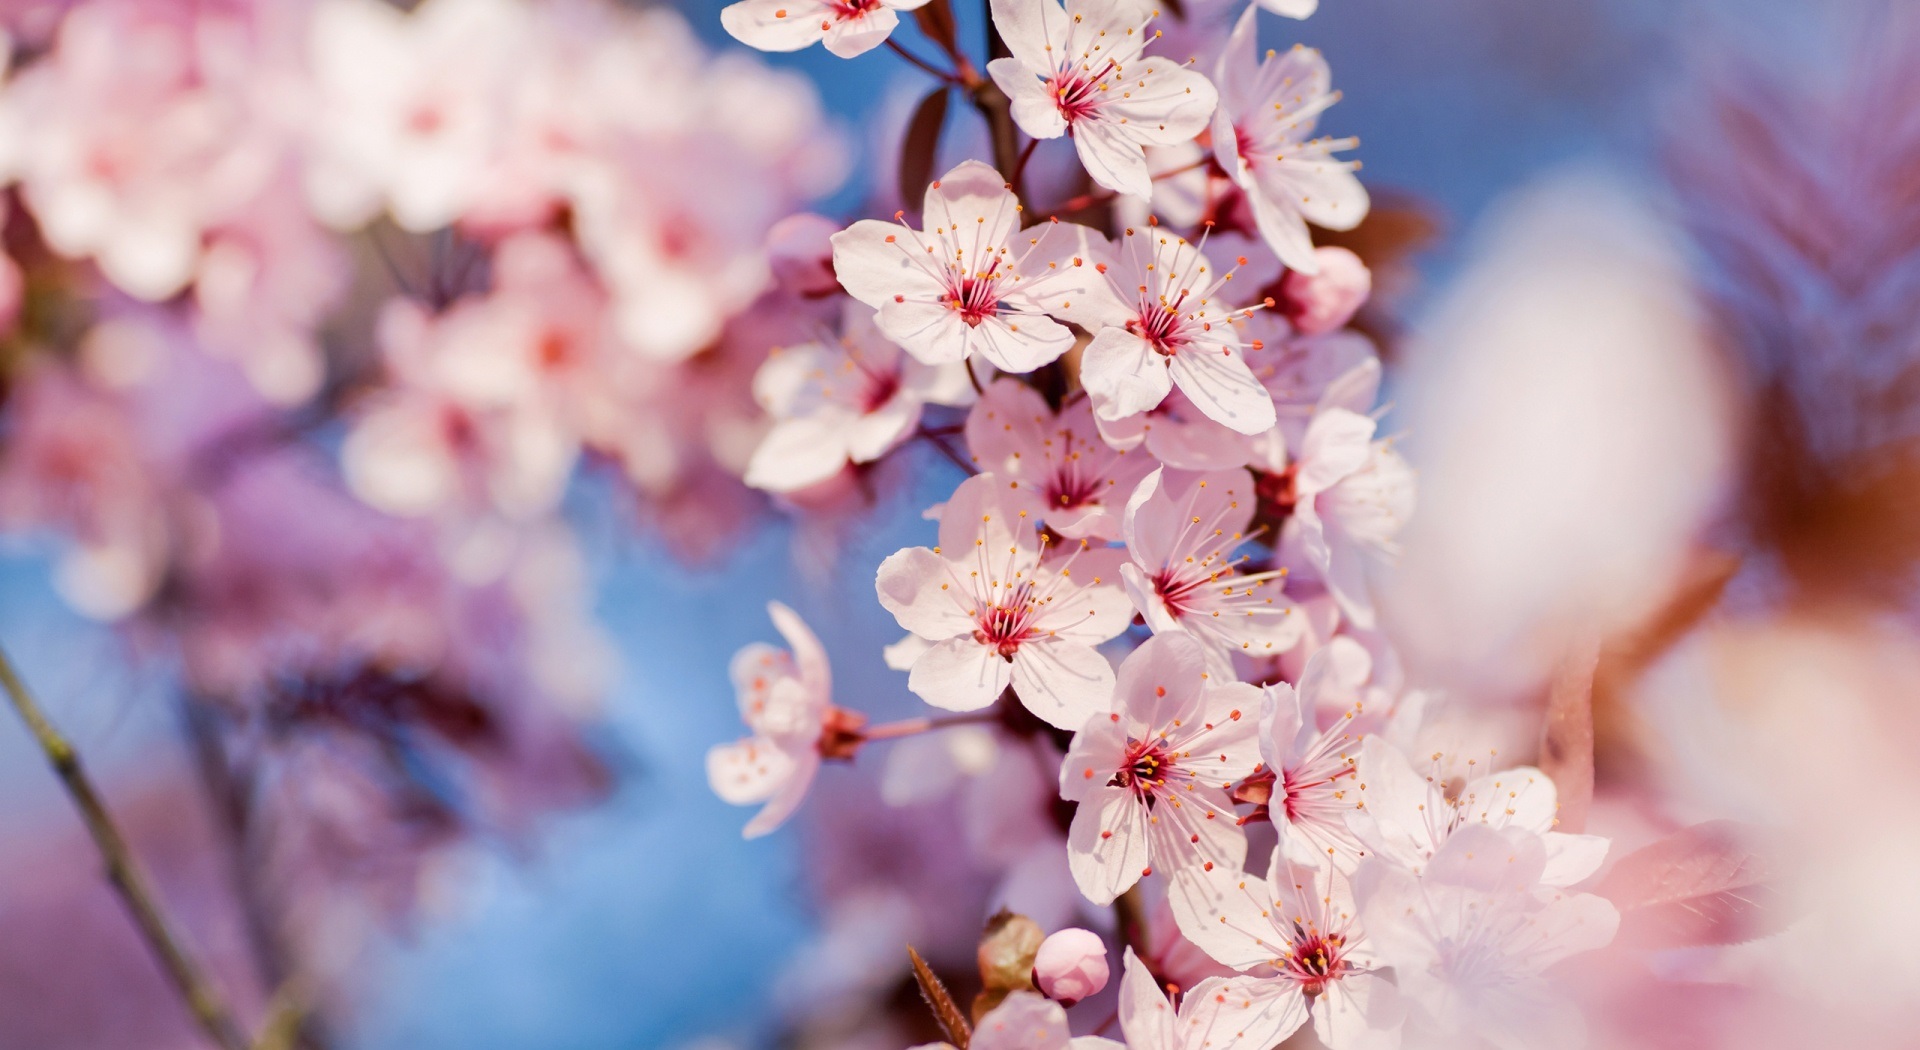 تصاویر فصل بهار با کیفیت بالا